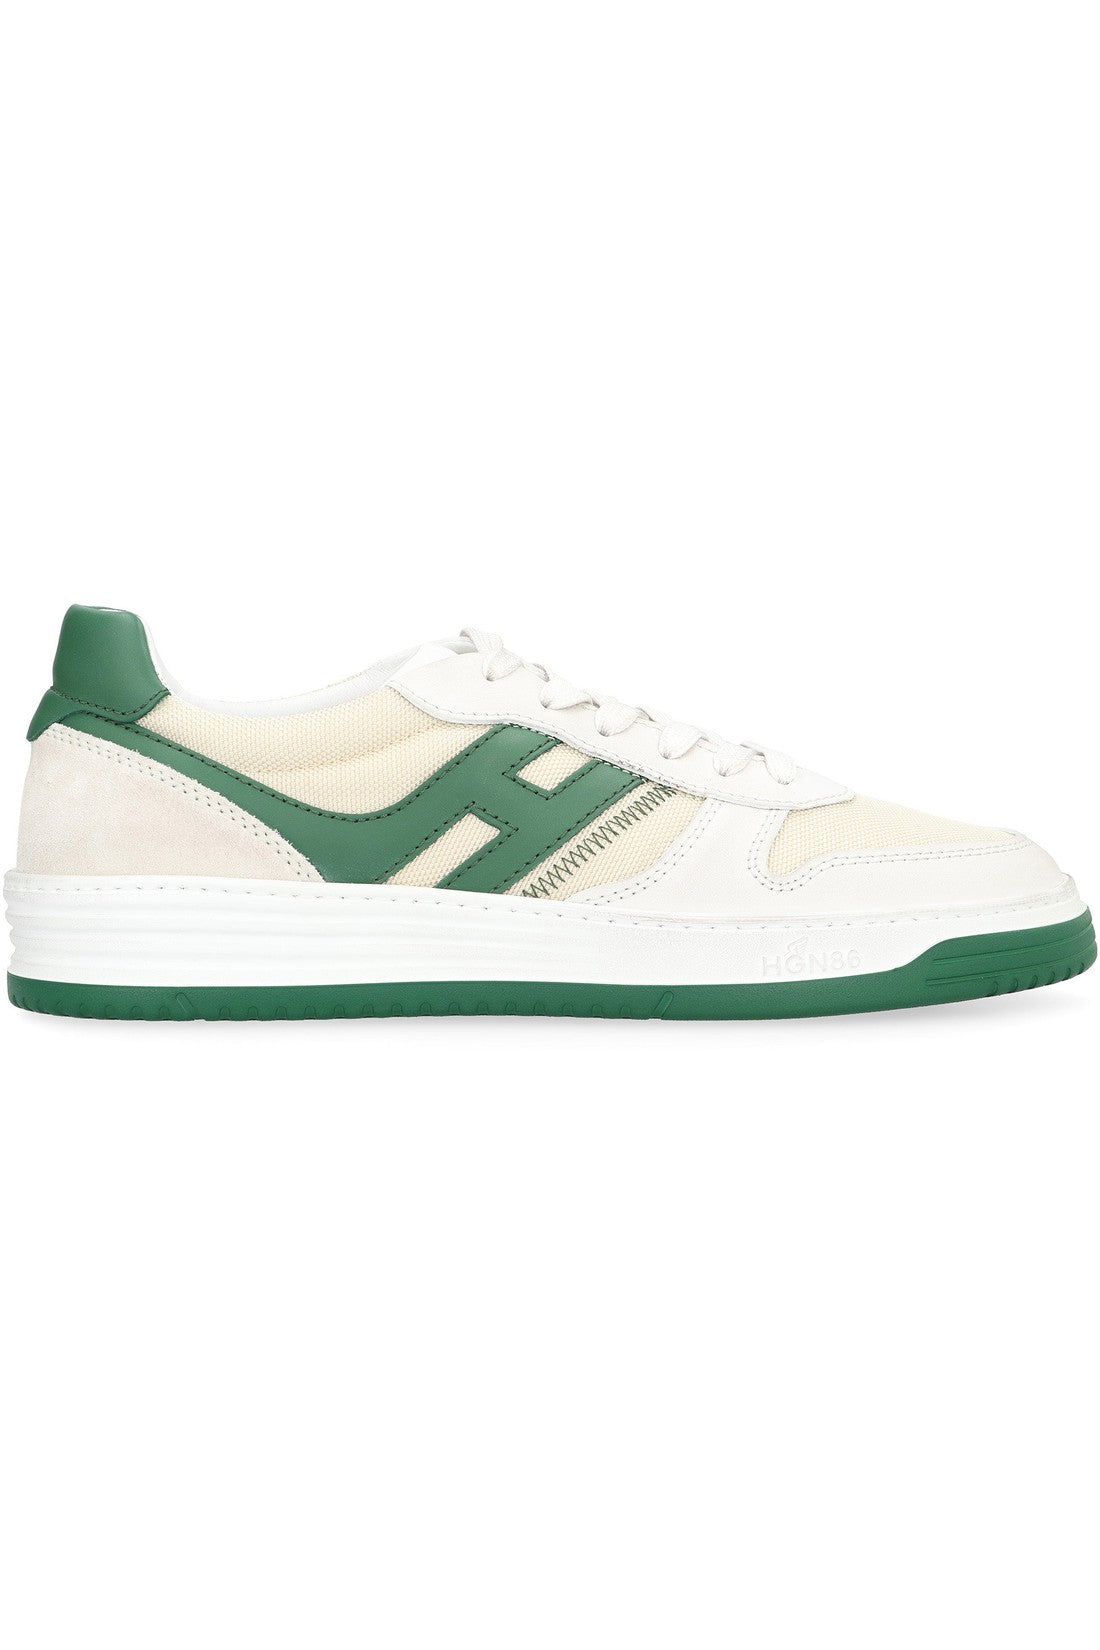 Hogan-OUTLET-SALE-Hogan H630 Low-top sneakers-ARCHIVIST